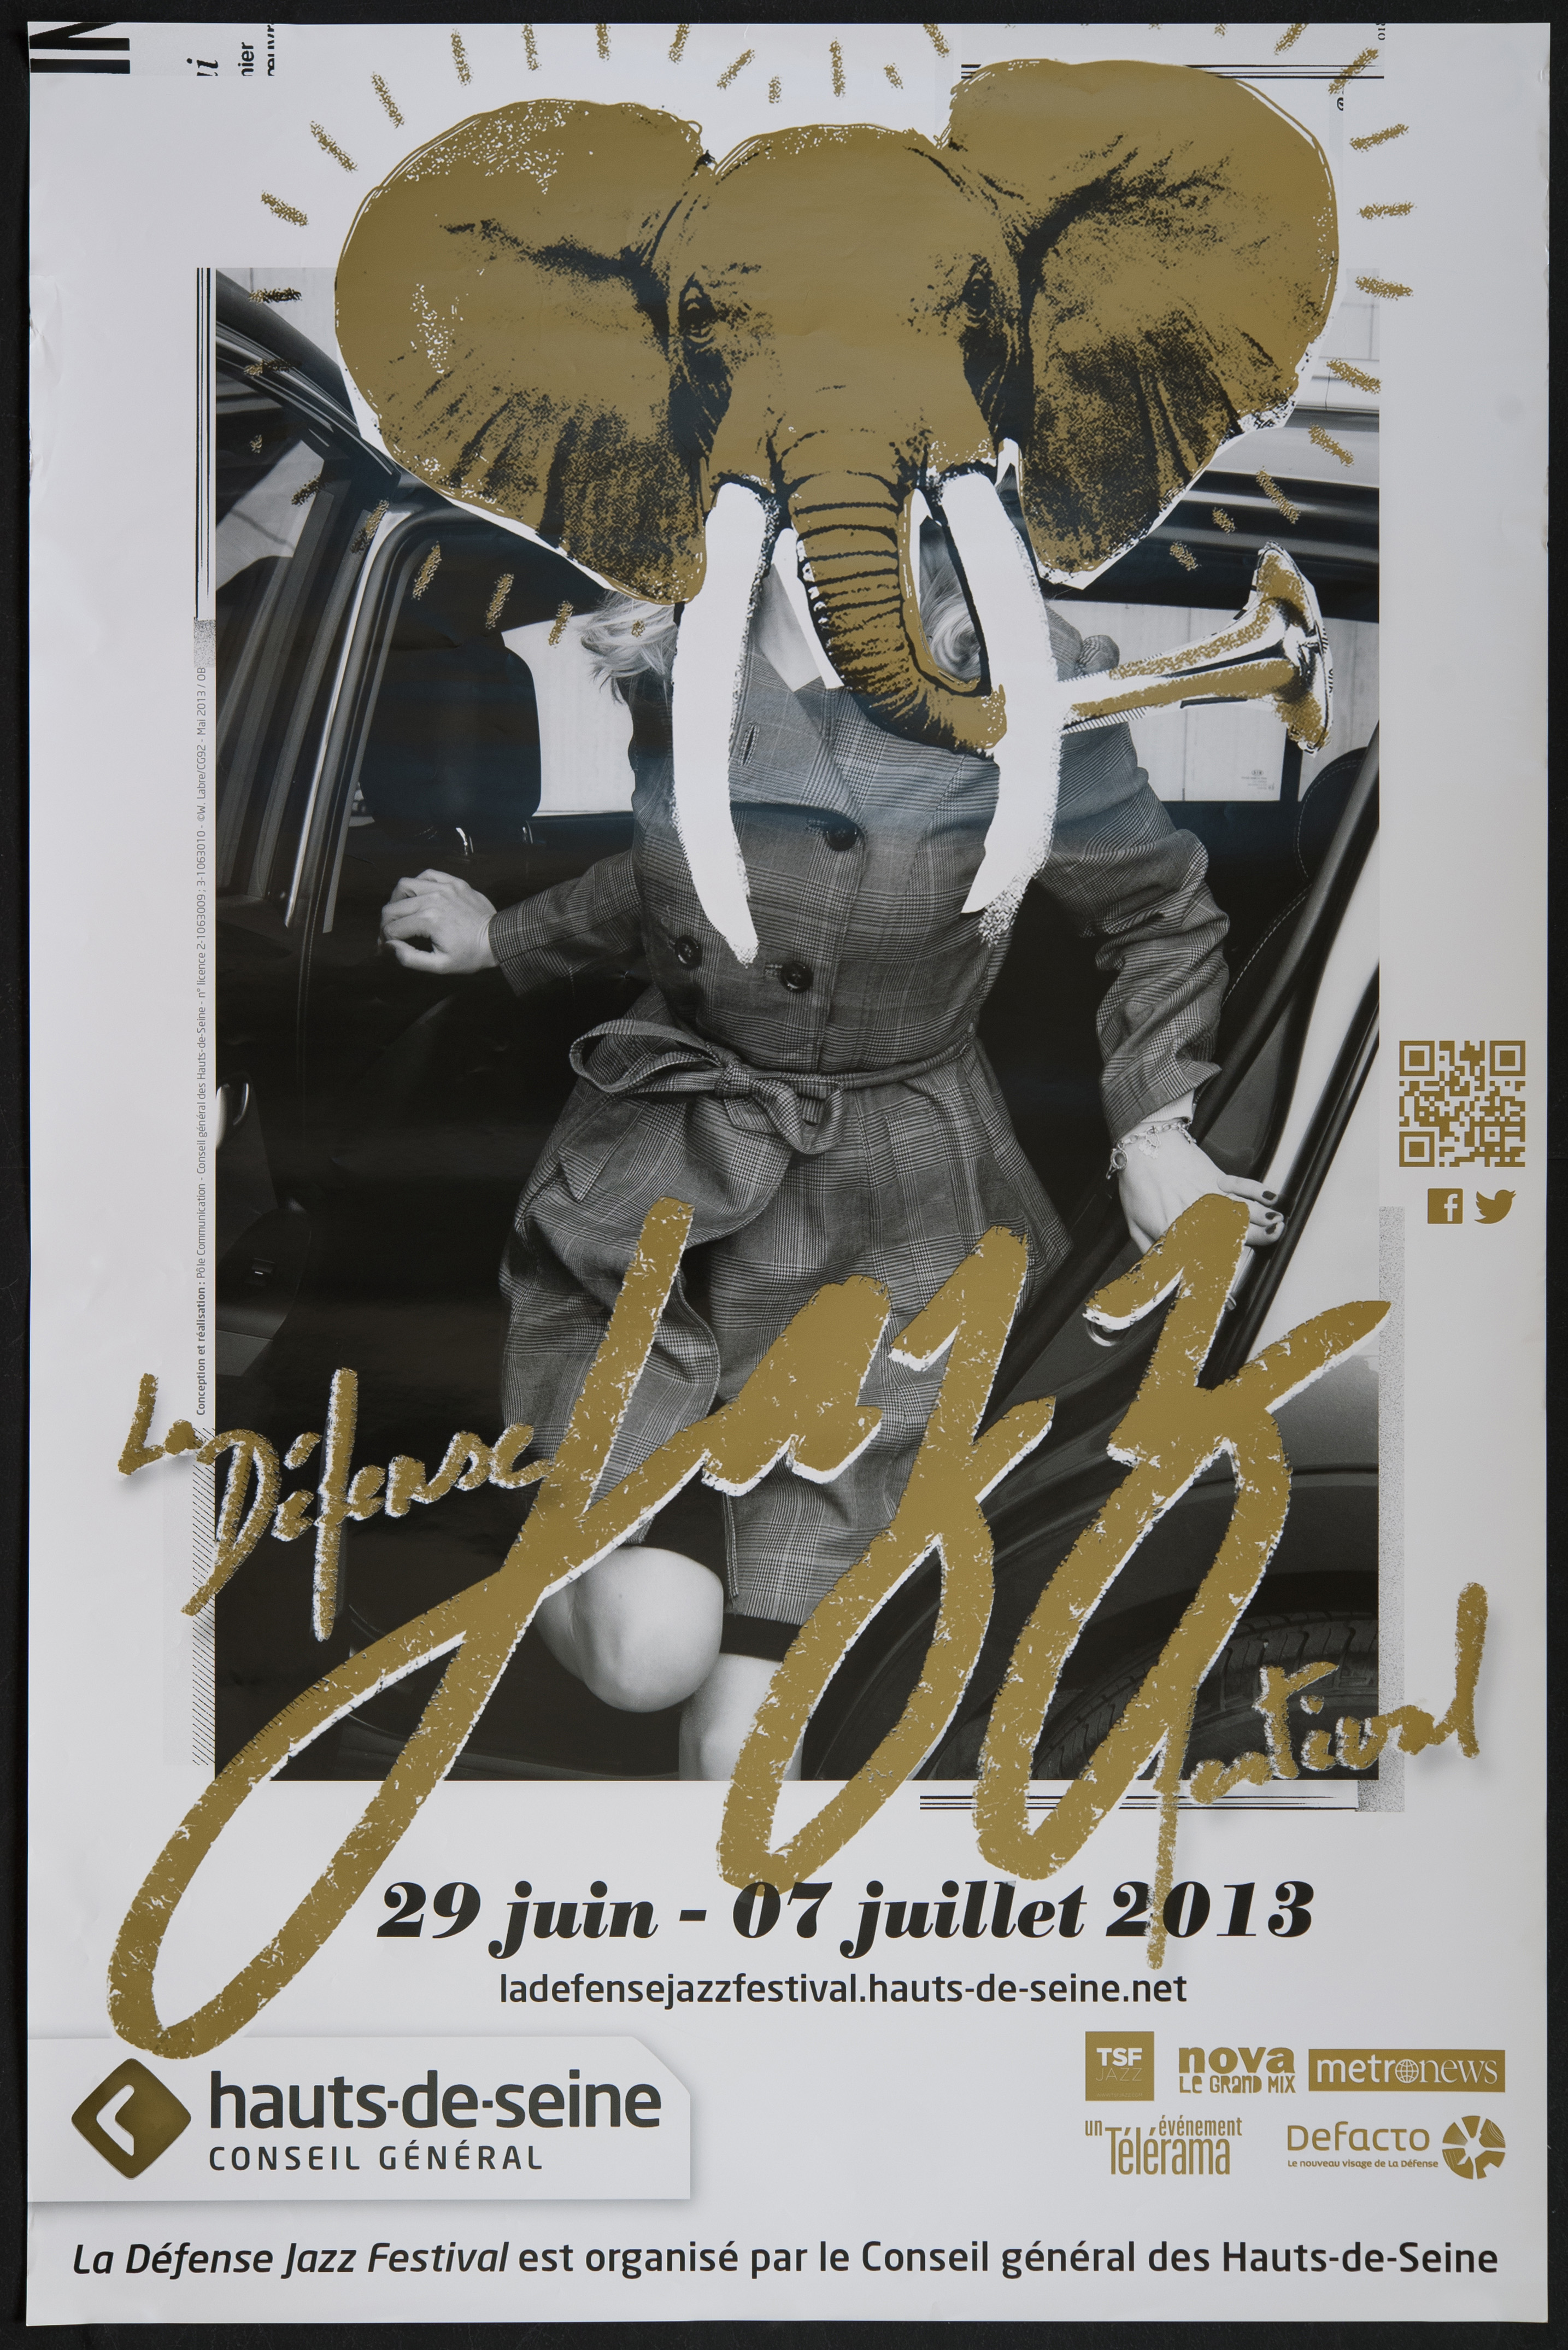 La Défense Jazz festival. 29 juin-7 juillet 2013 [liste des partenaires]. La Défense Jazz festival est organisé par le conseil général des Hauts-de-Seine/ ill. Willy Labre.  -CG92, 2013. - 1 affiche coul., 118 x 78 cm.